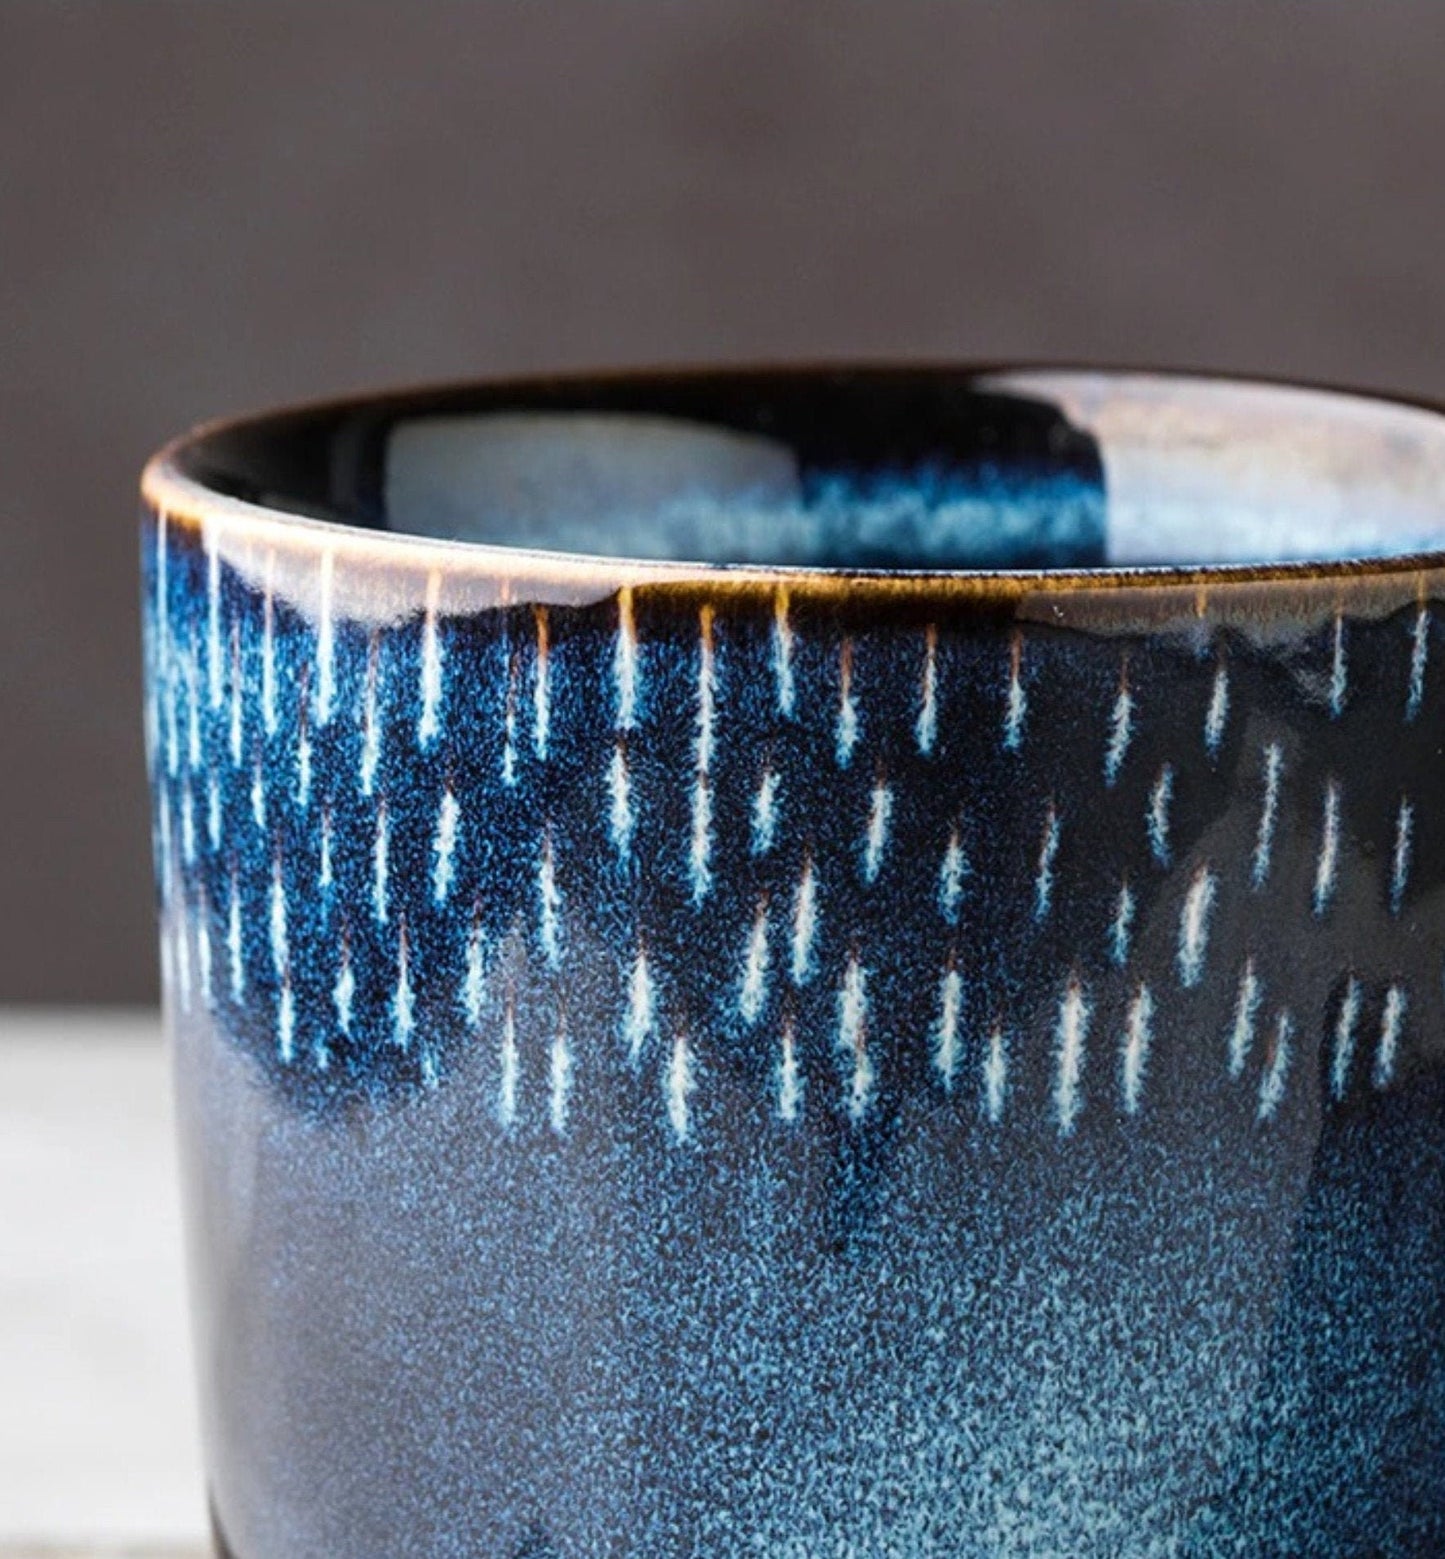 Ceramic Mug With Blue Glaze and White Lines 2x1 Set